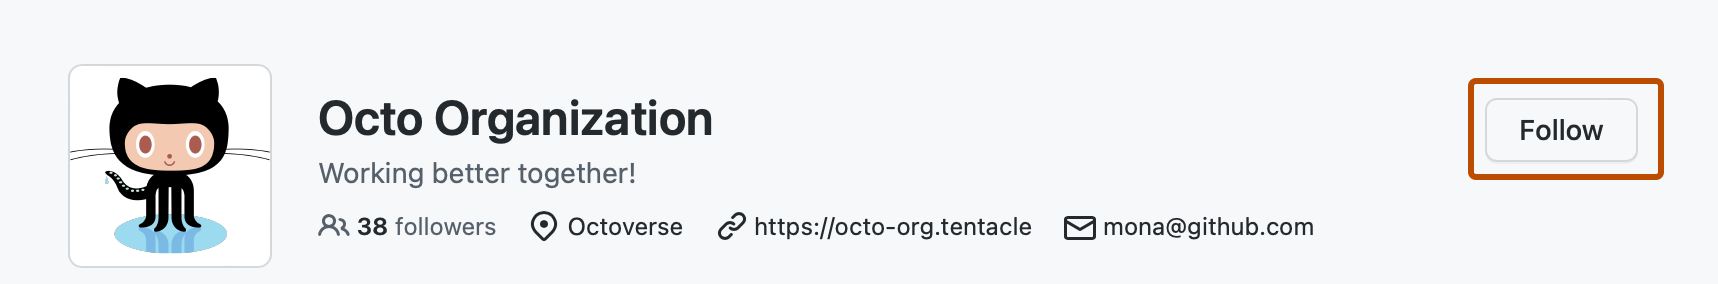 Captura de tela da página de perfil de @octo-org. Um botão, rotulado como "Seguir", está contornado em laranja escuro.